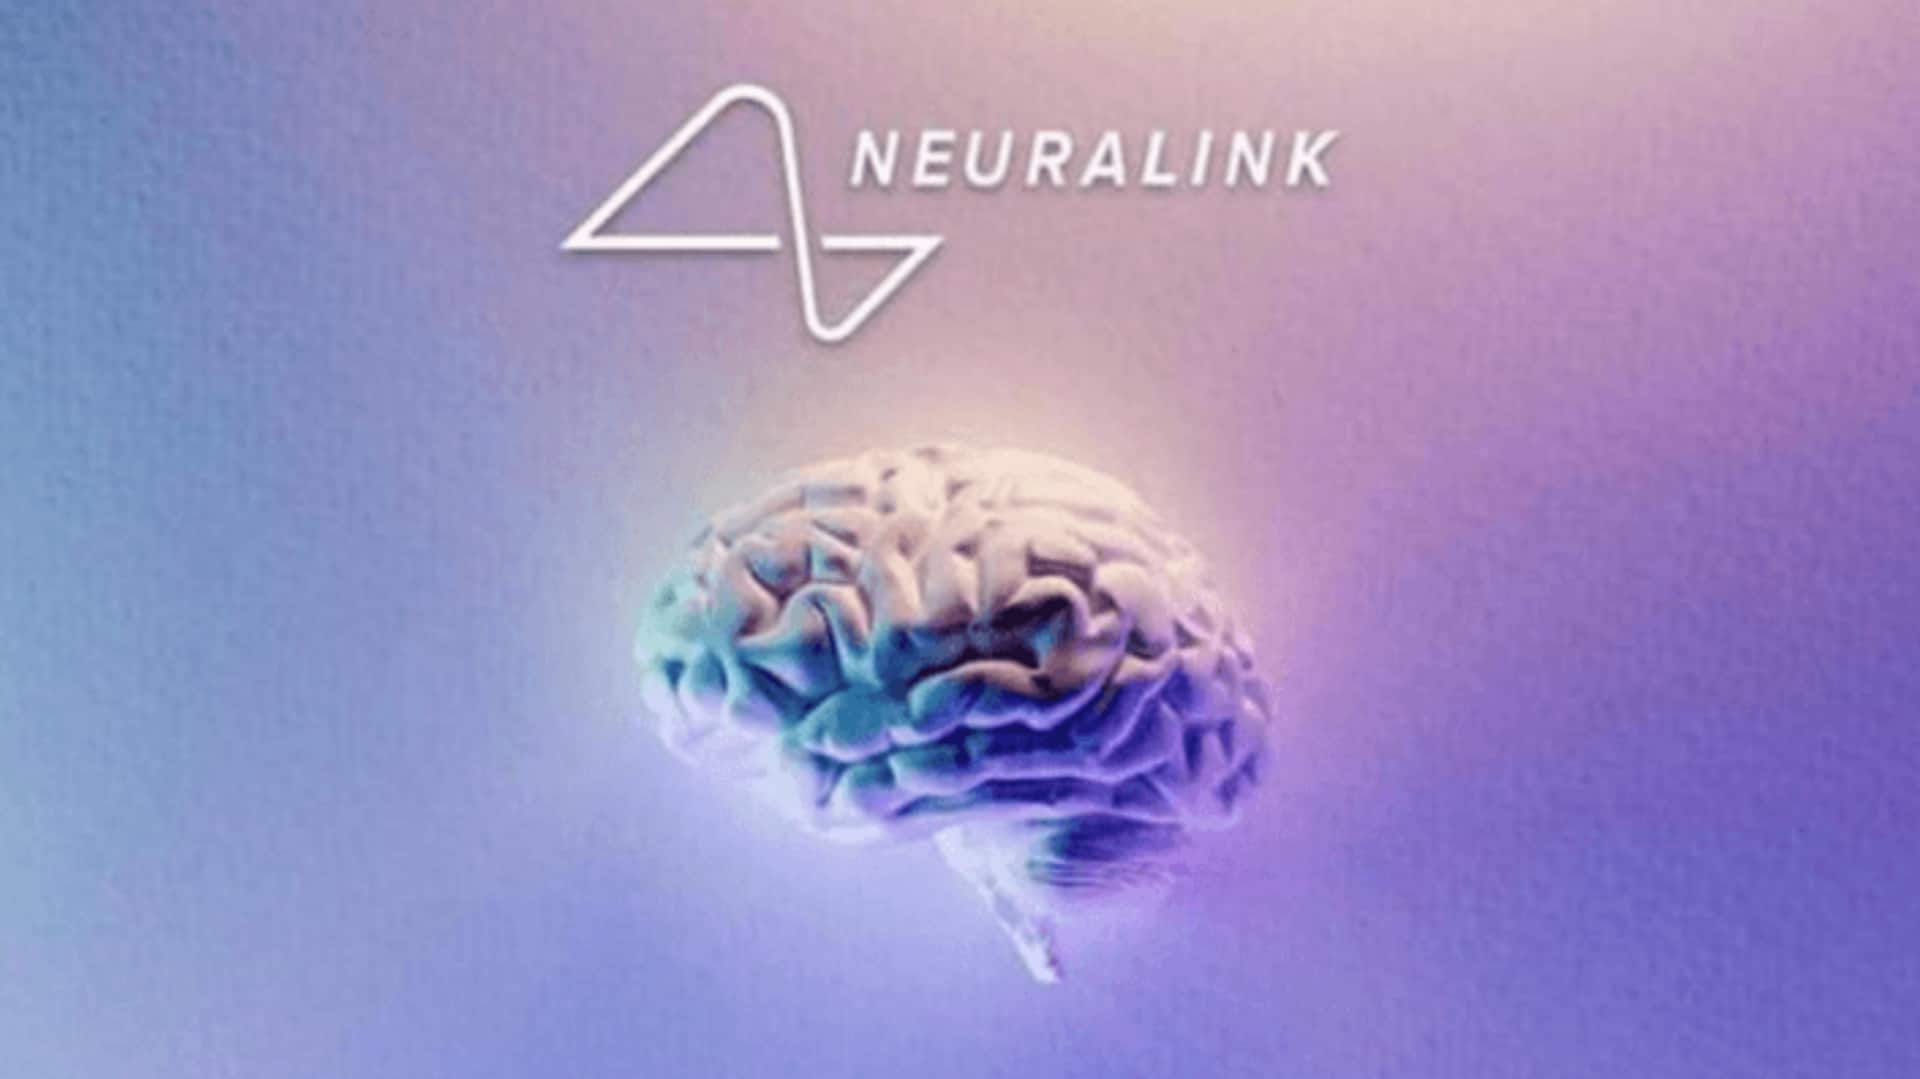 एलन मस्क की न्यूरालिंक लकवाग्रस्त रोगियों के दिमाग में लगाएगी चिप, करेगी मानव परीक्षण